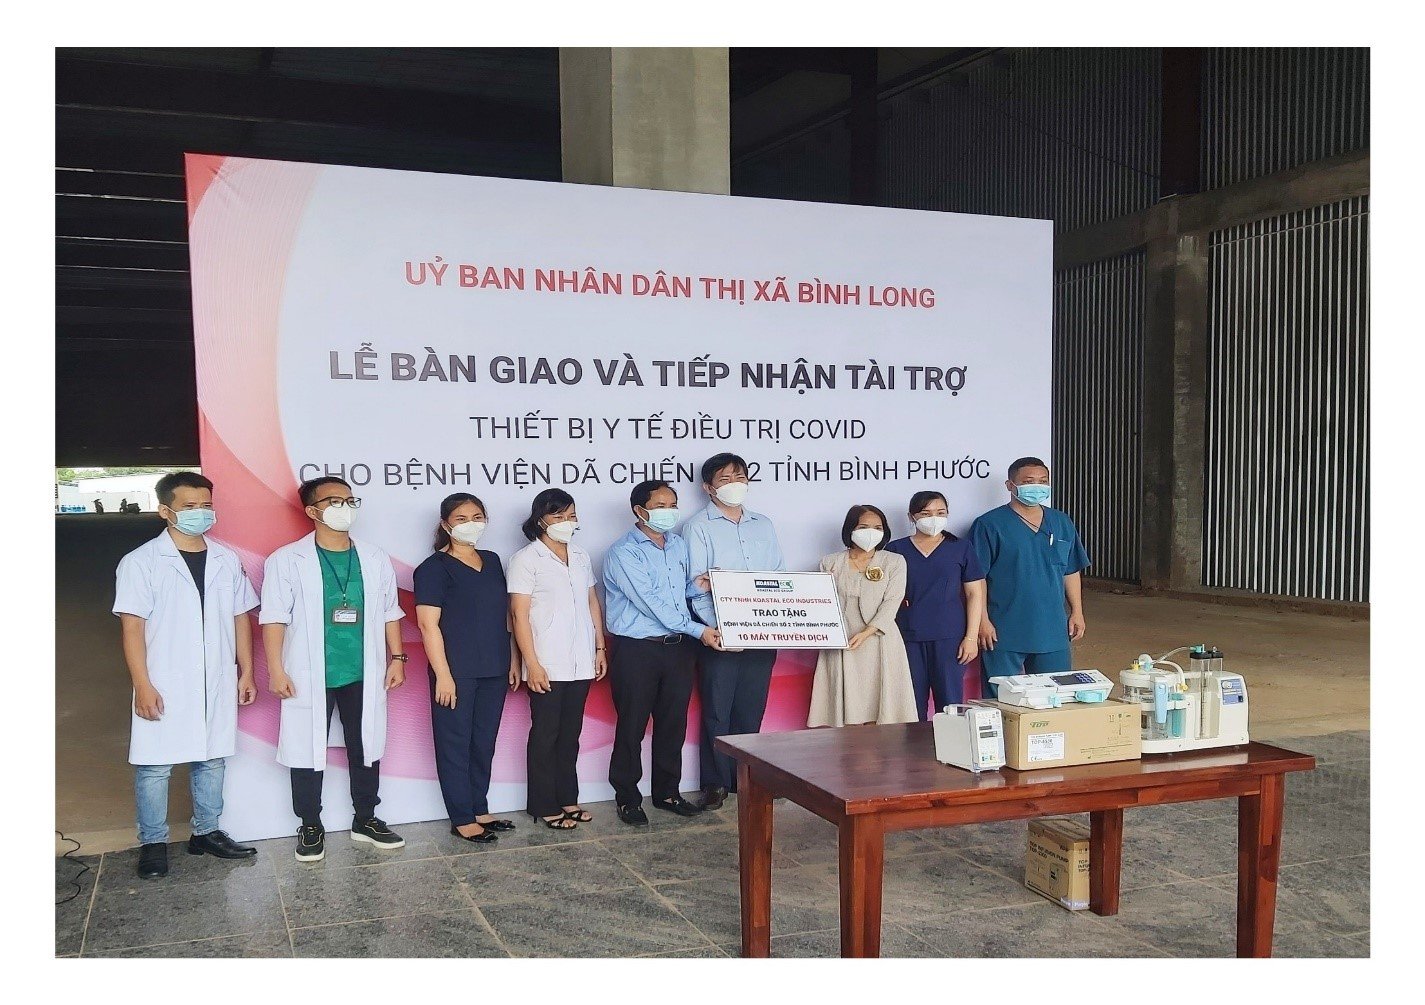 Trao tặng 10 máy truyền dịch tự động cho Bệnh viện dã chiến Số 2 tại trung tâm thị xã Bình Long, tỉnh Bình Phước